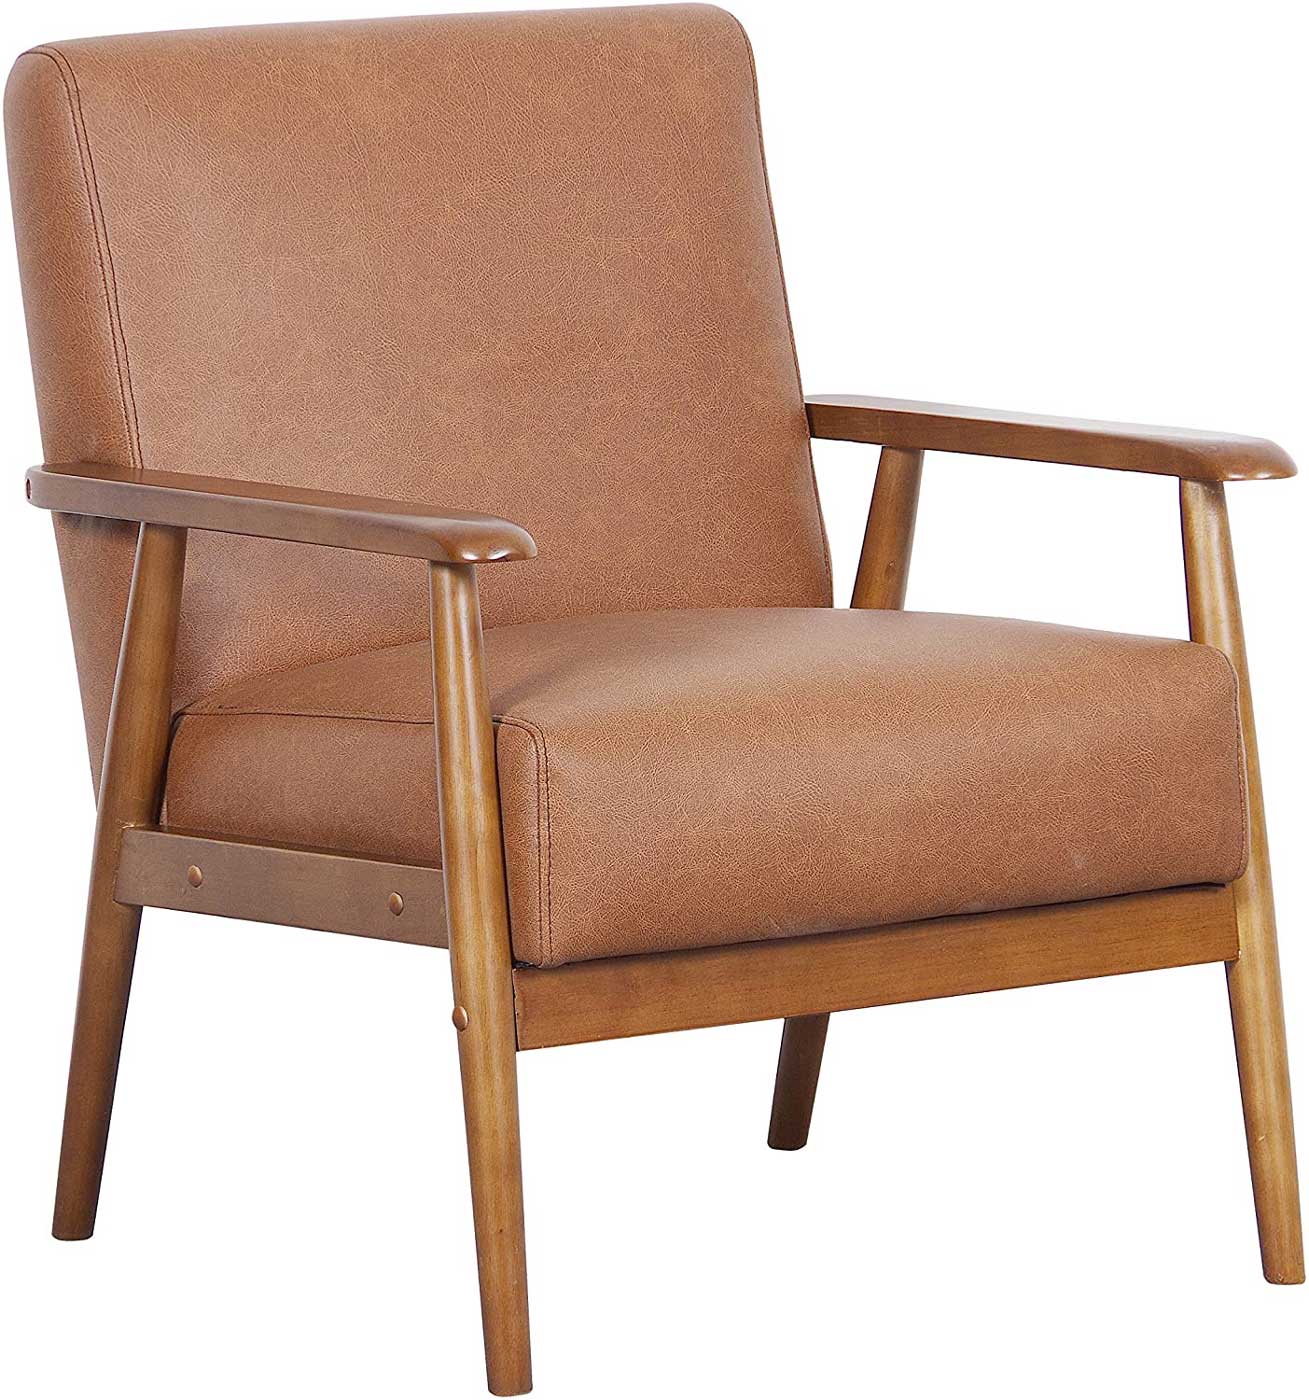 Pulaski DS-D030003-329 Wood Frame Faux Leather Accent Chair, 25.38\\\" x 28.0\\\" x 30.5\\\", Cognac Brown